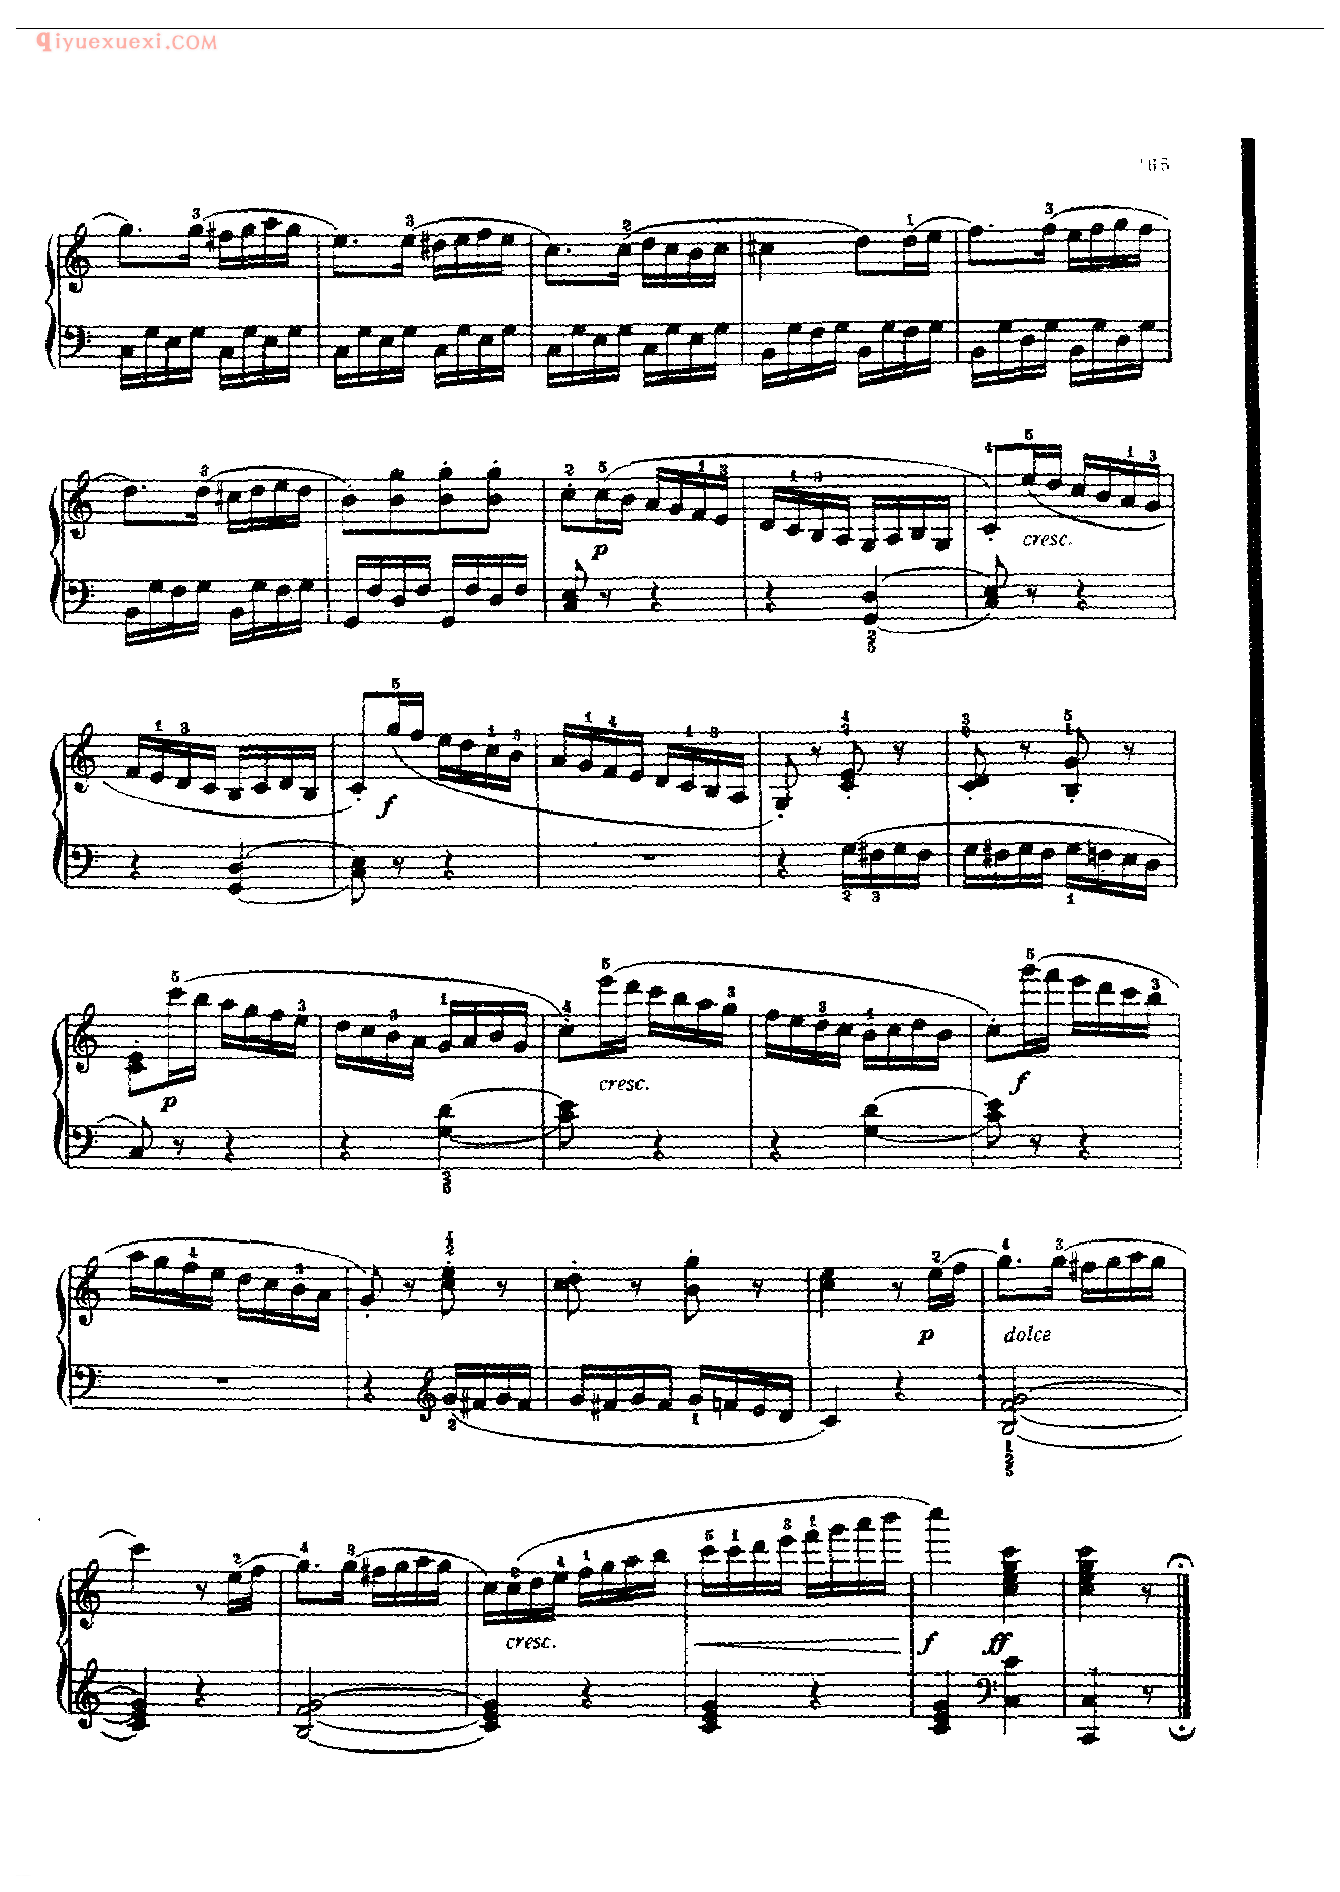 钢琴曲精选：小奏鸣曲(Sonatine) Op. 20-l）库劳